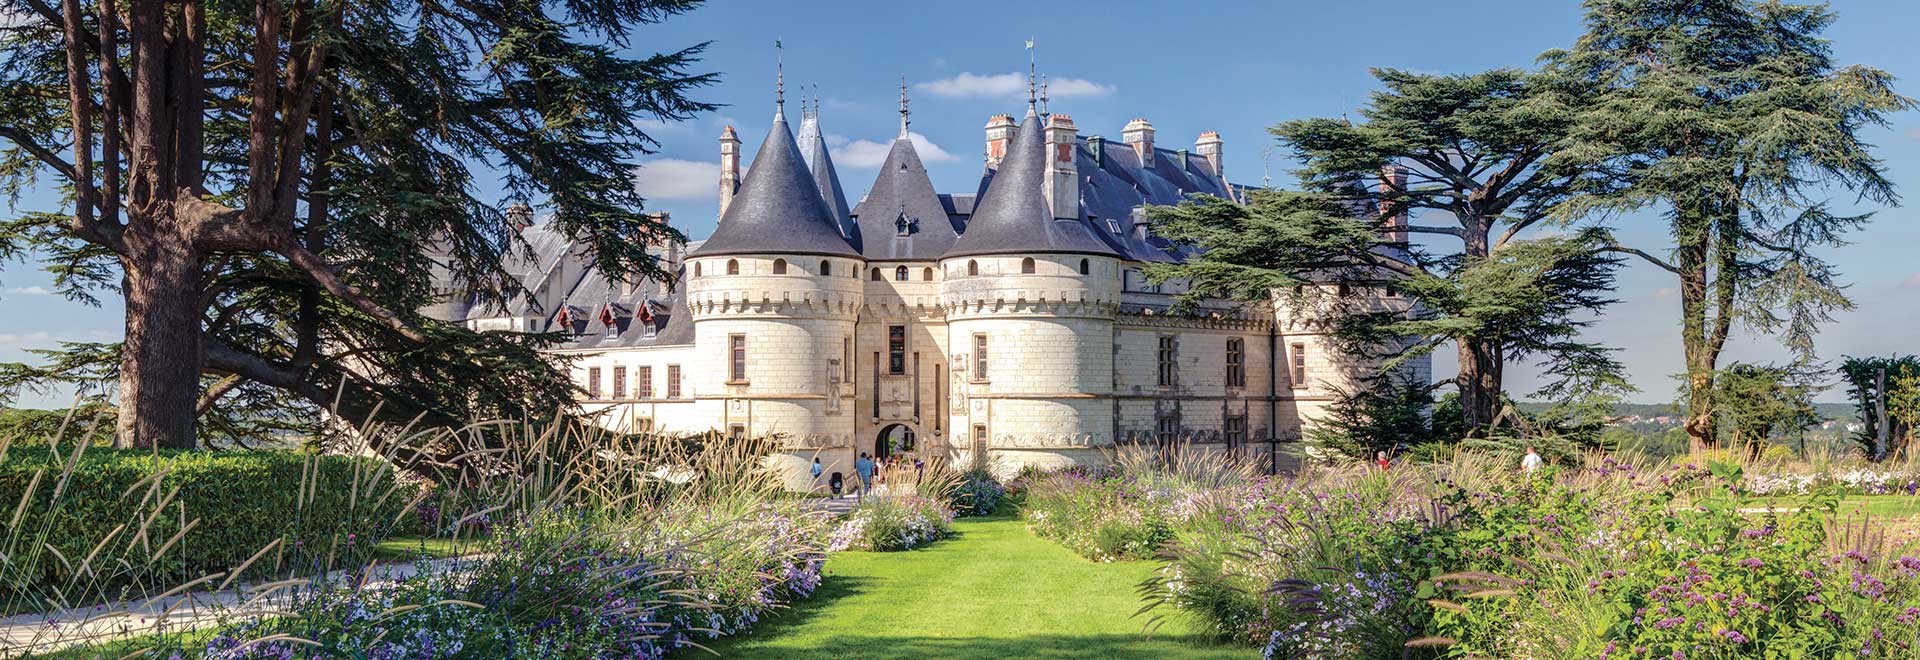 2023 French Gardens Paris Loire Chateau Chaumont m